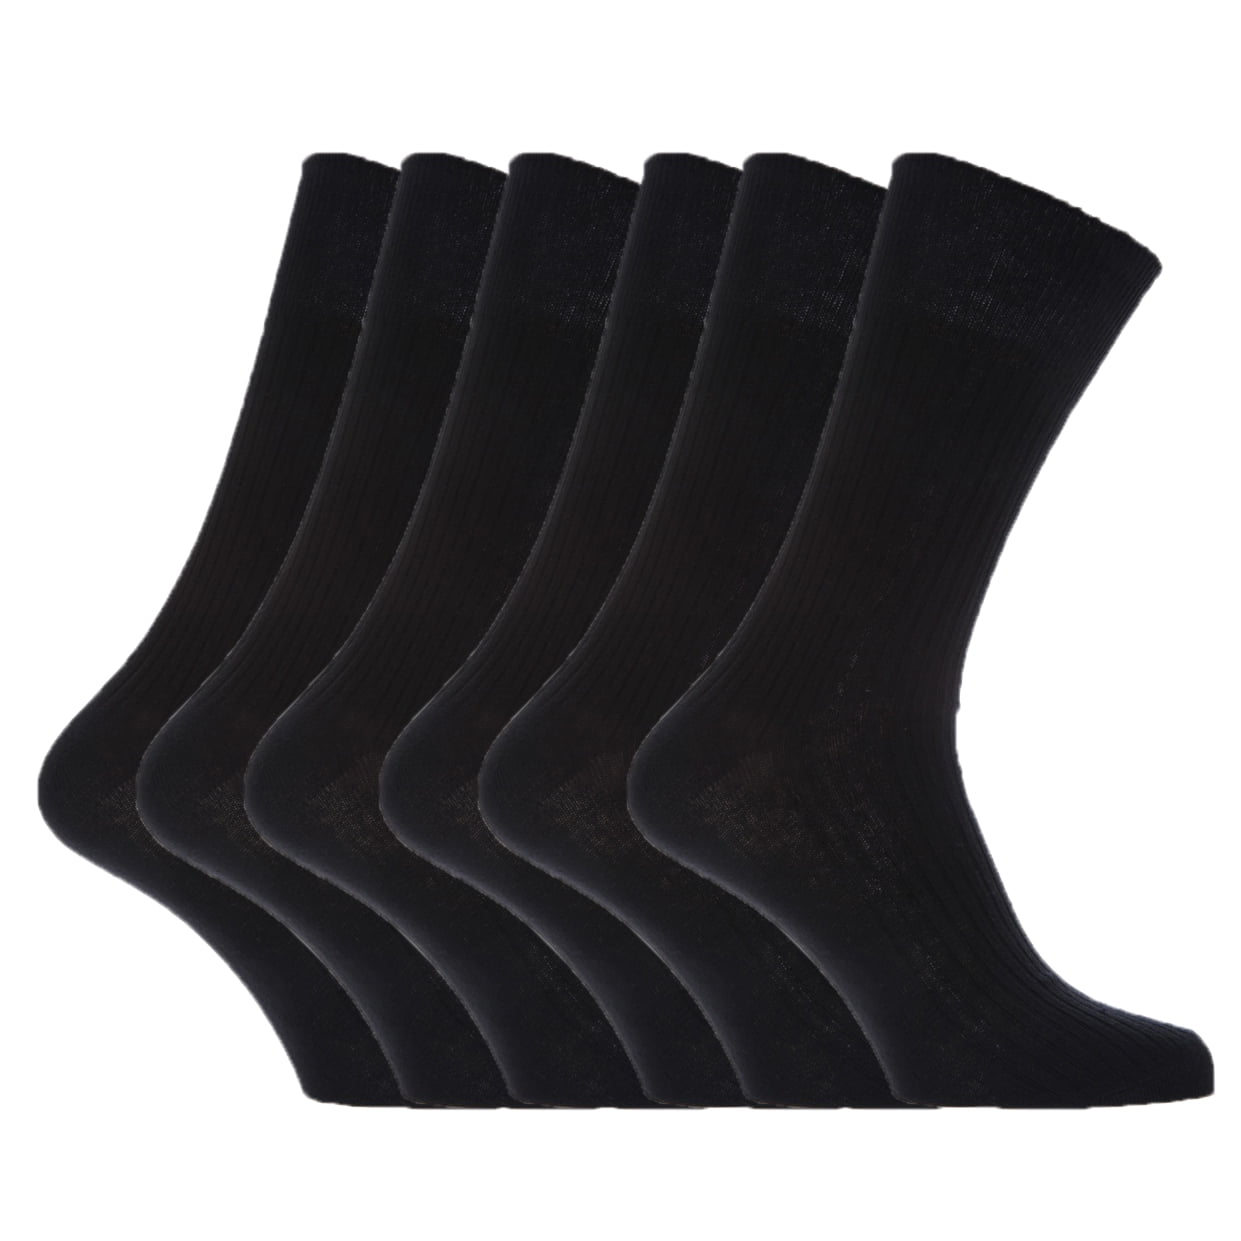 Hommes 100% Coton Non Élastique Diabétique Fashion Socks Easy Grip Soft Top M-730 Lot 